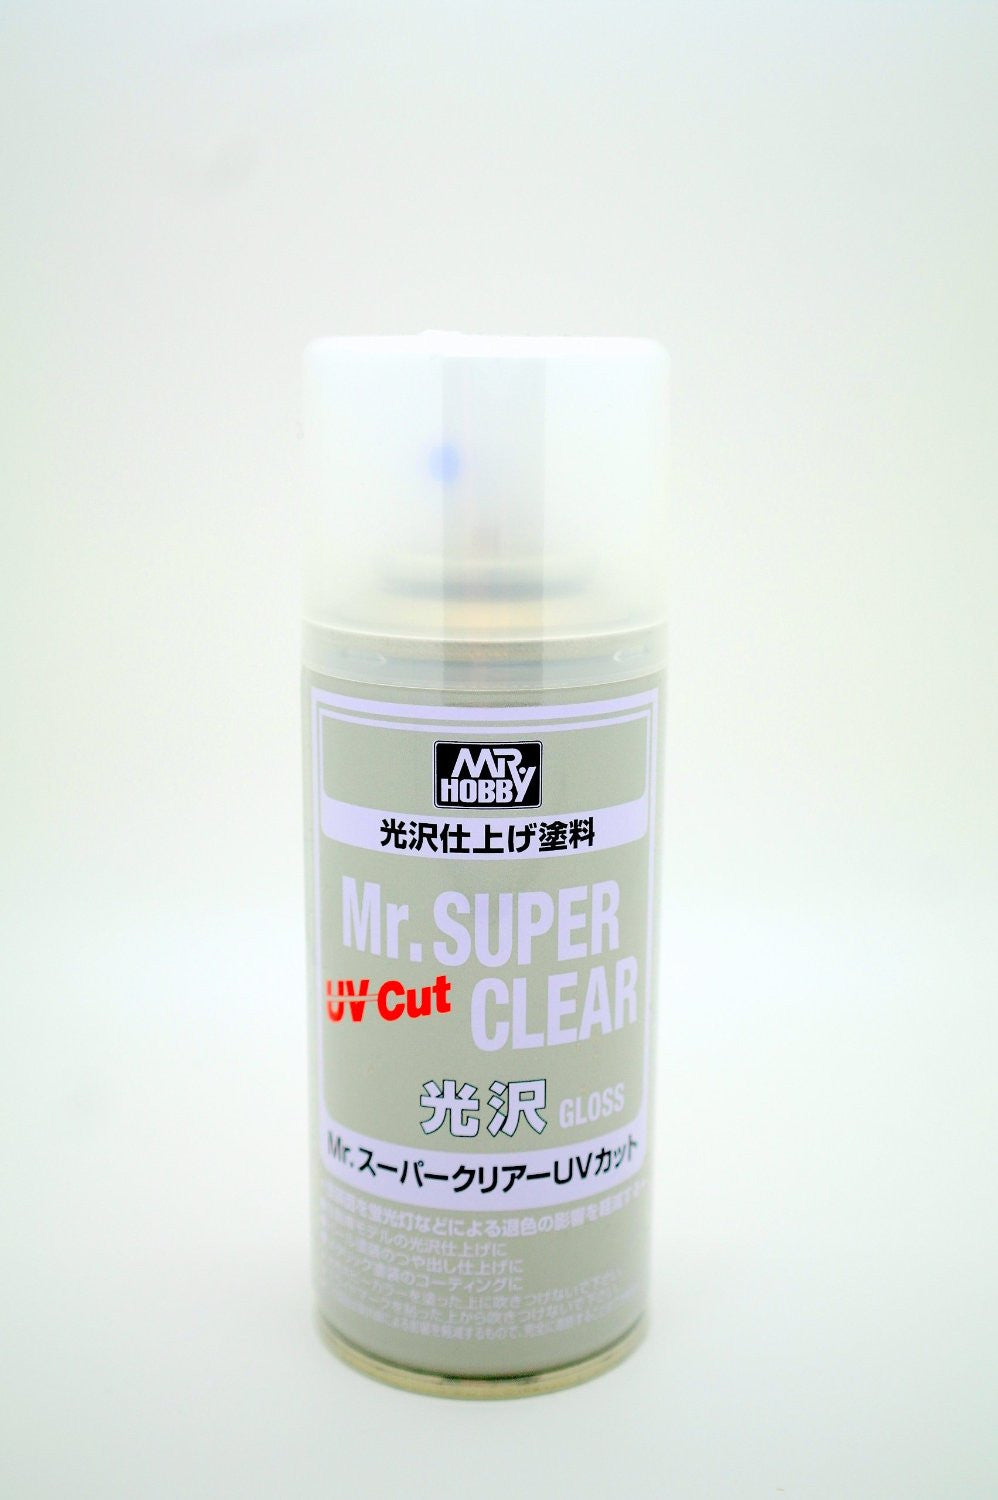 Mr. Super Clear Matt UV Cut 170ml (Spray)